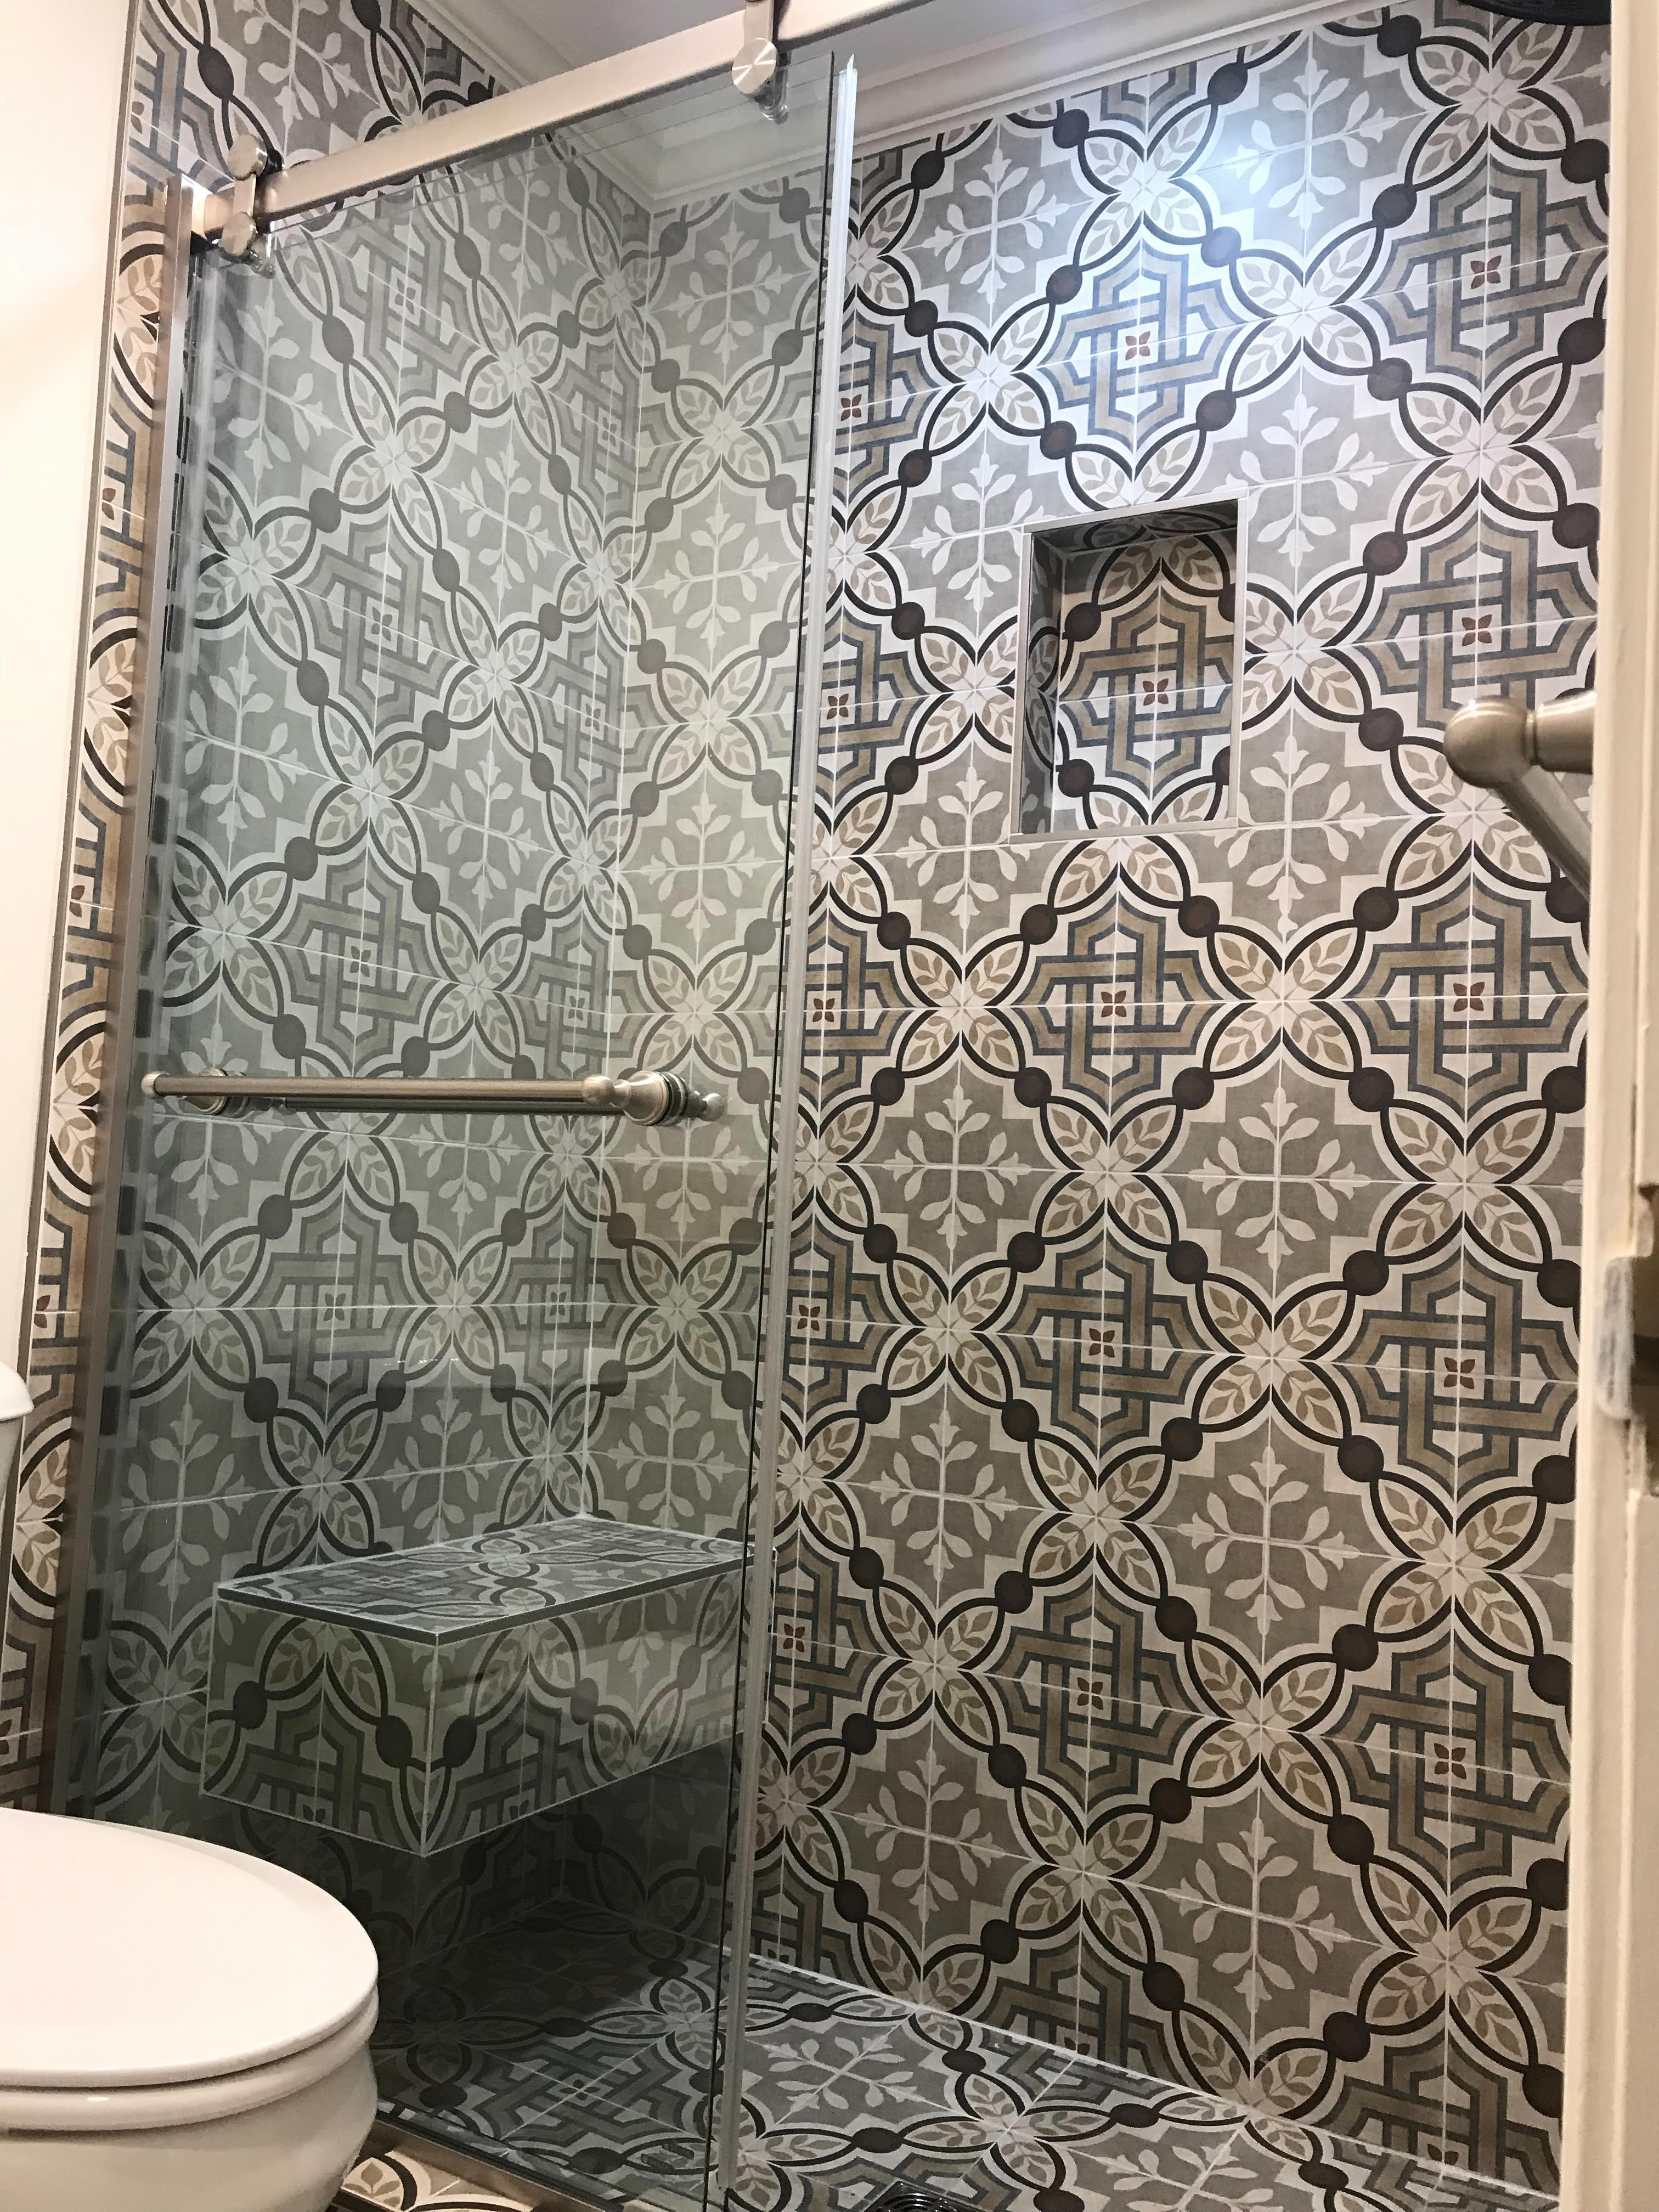 Nueva ducha de lujo personalizada moderna en el baño